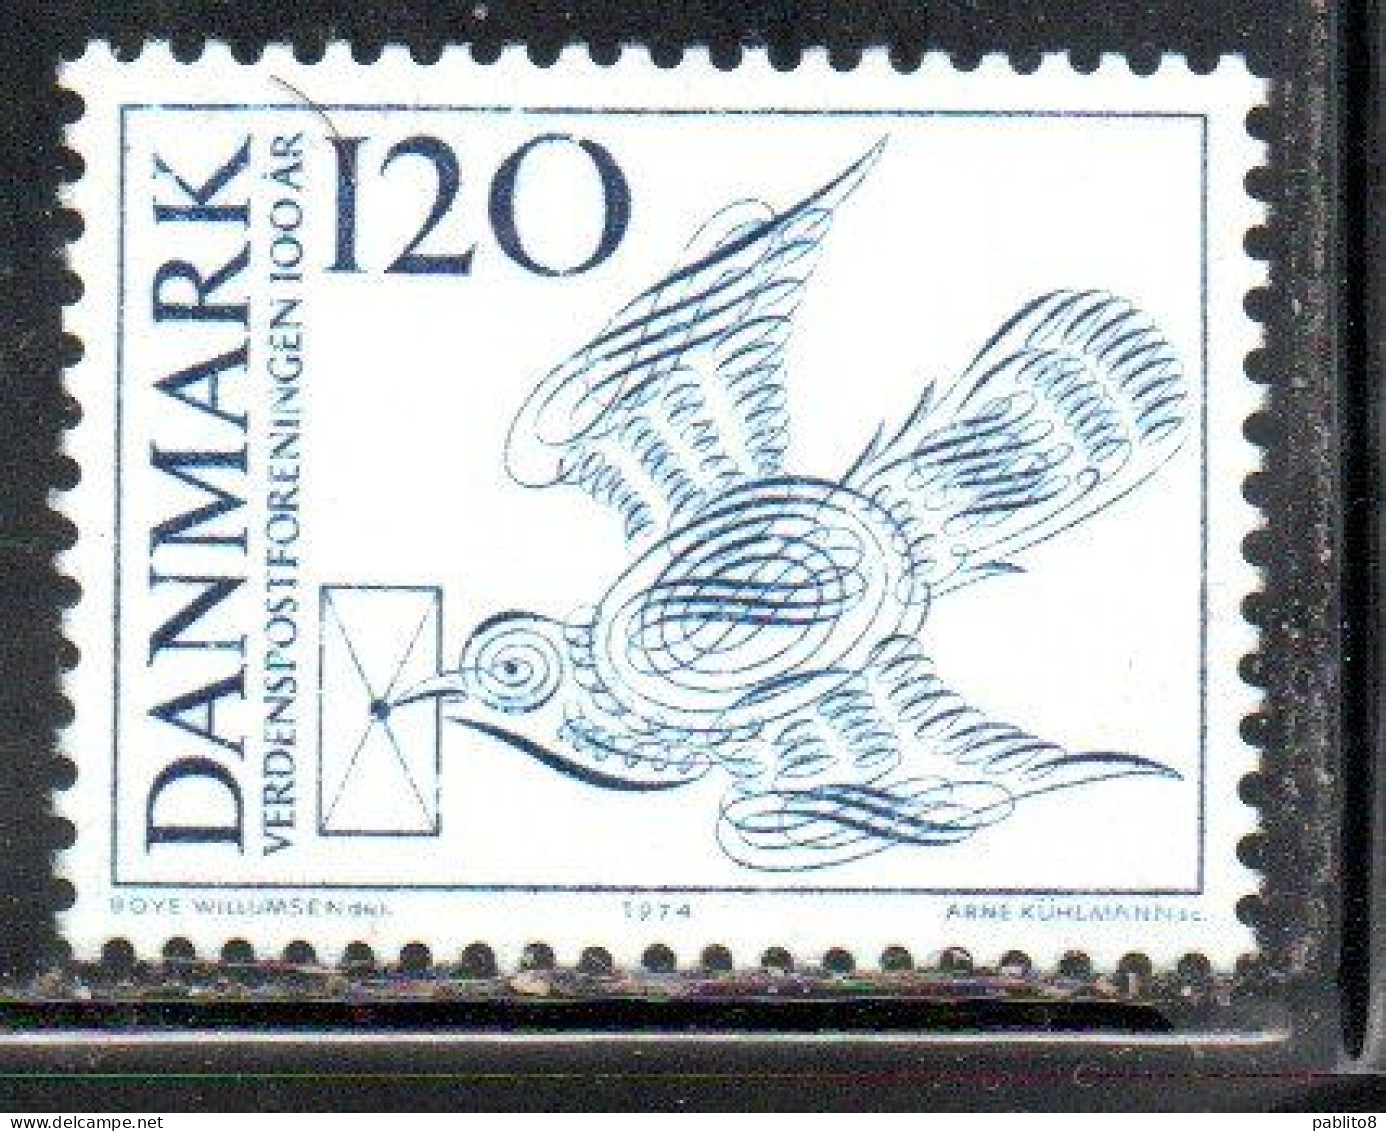 DANEMARK DANMARK DENMARK DANIMARCA 1974 CENTENARY OF UPU CARRIER PIGEON 120o MNH - Nuovi